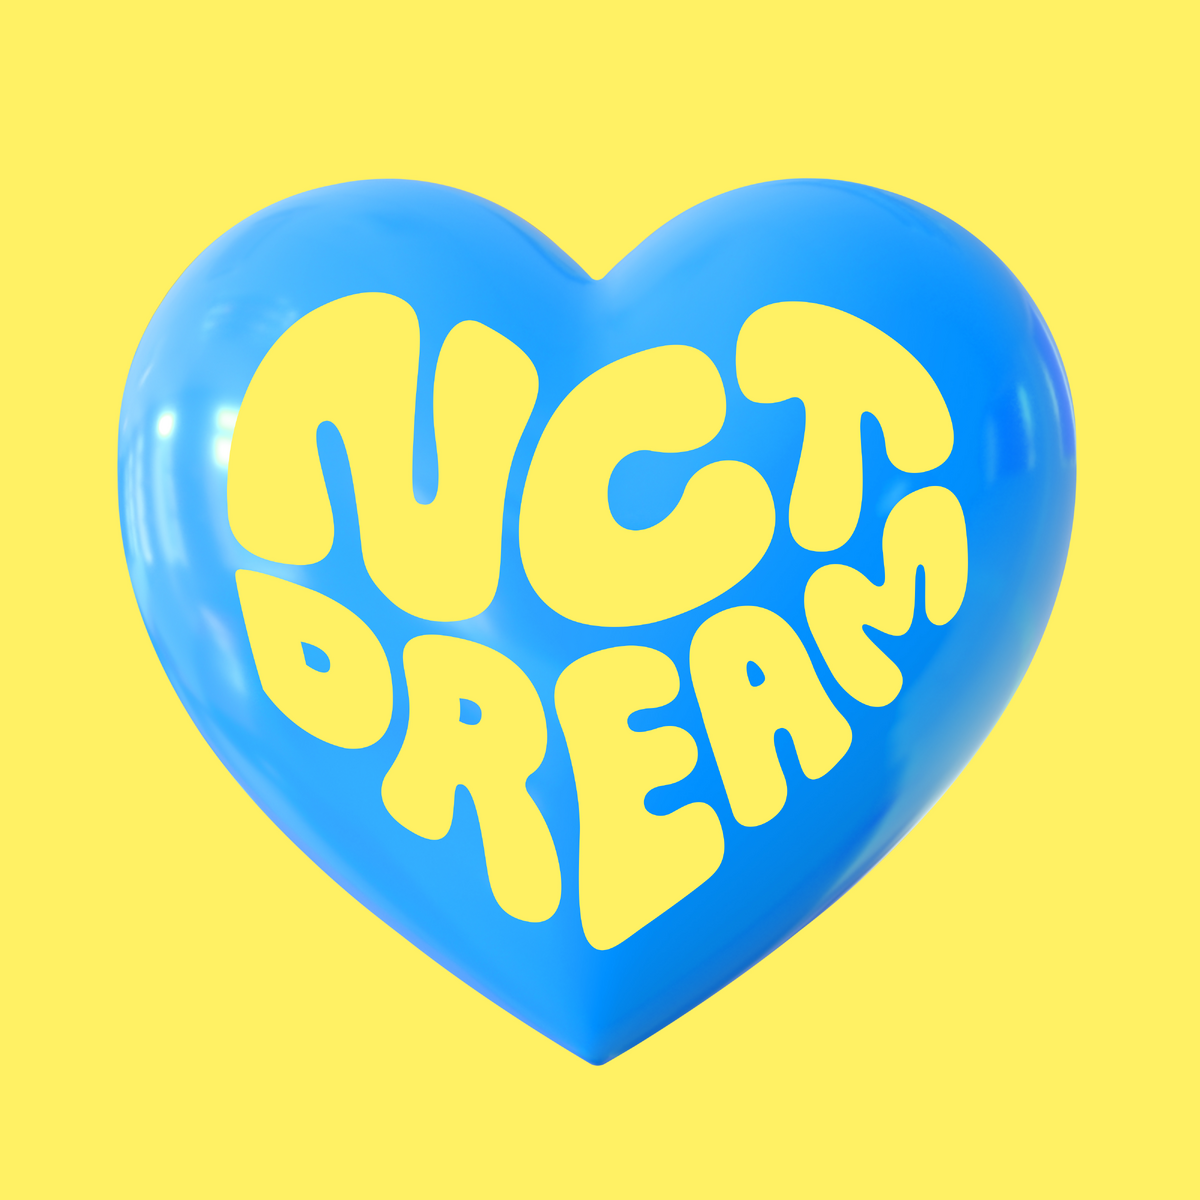 Future hello. NCT hello Future. NCT Dream hello Future. NCT Dream логотип. NCT Dream hello Future album.